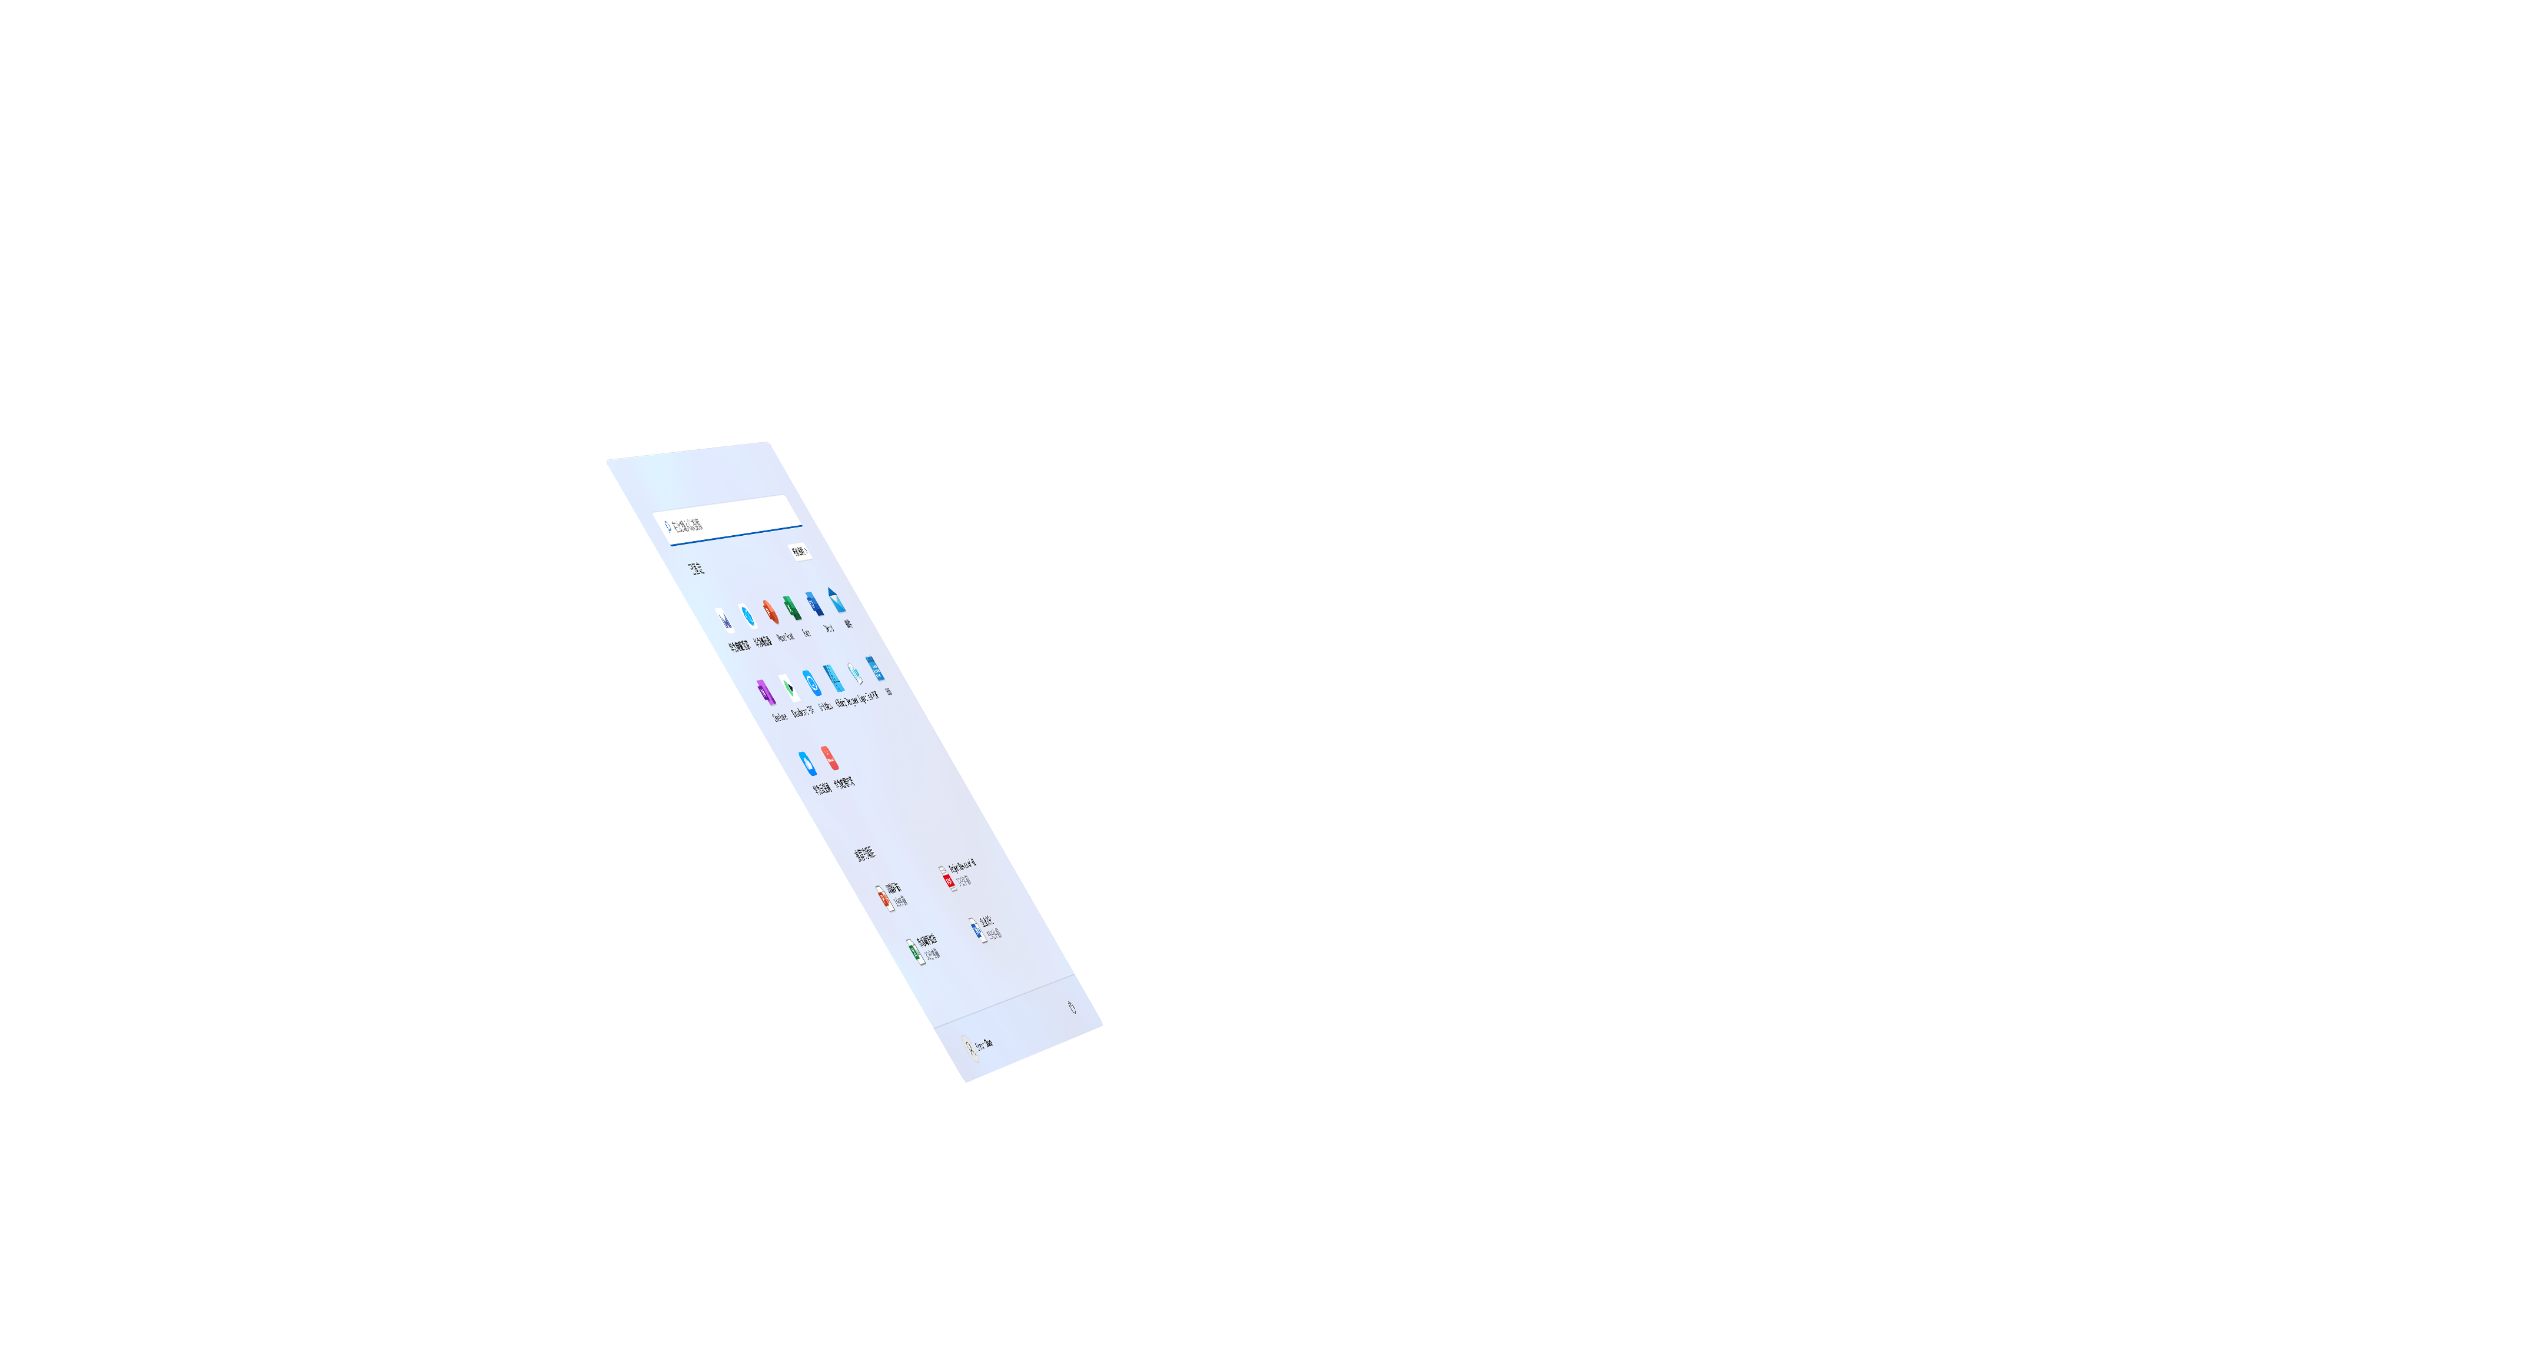 HUAWEI MateBook E-笔记本模式